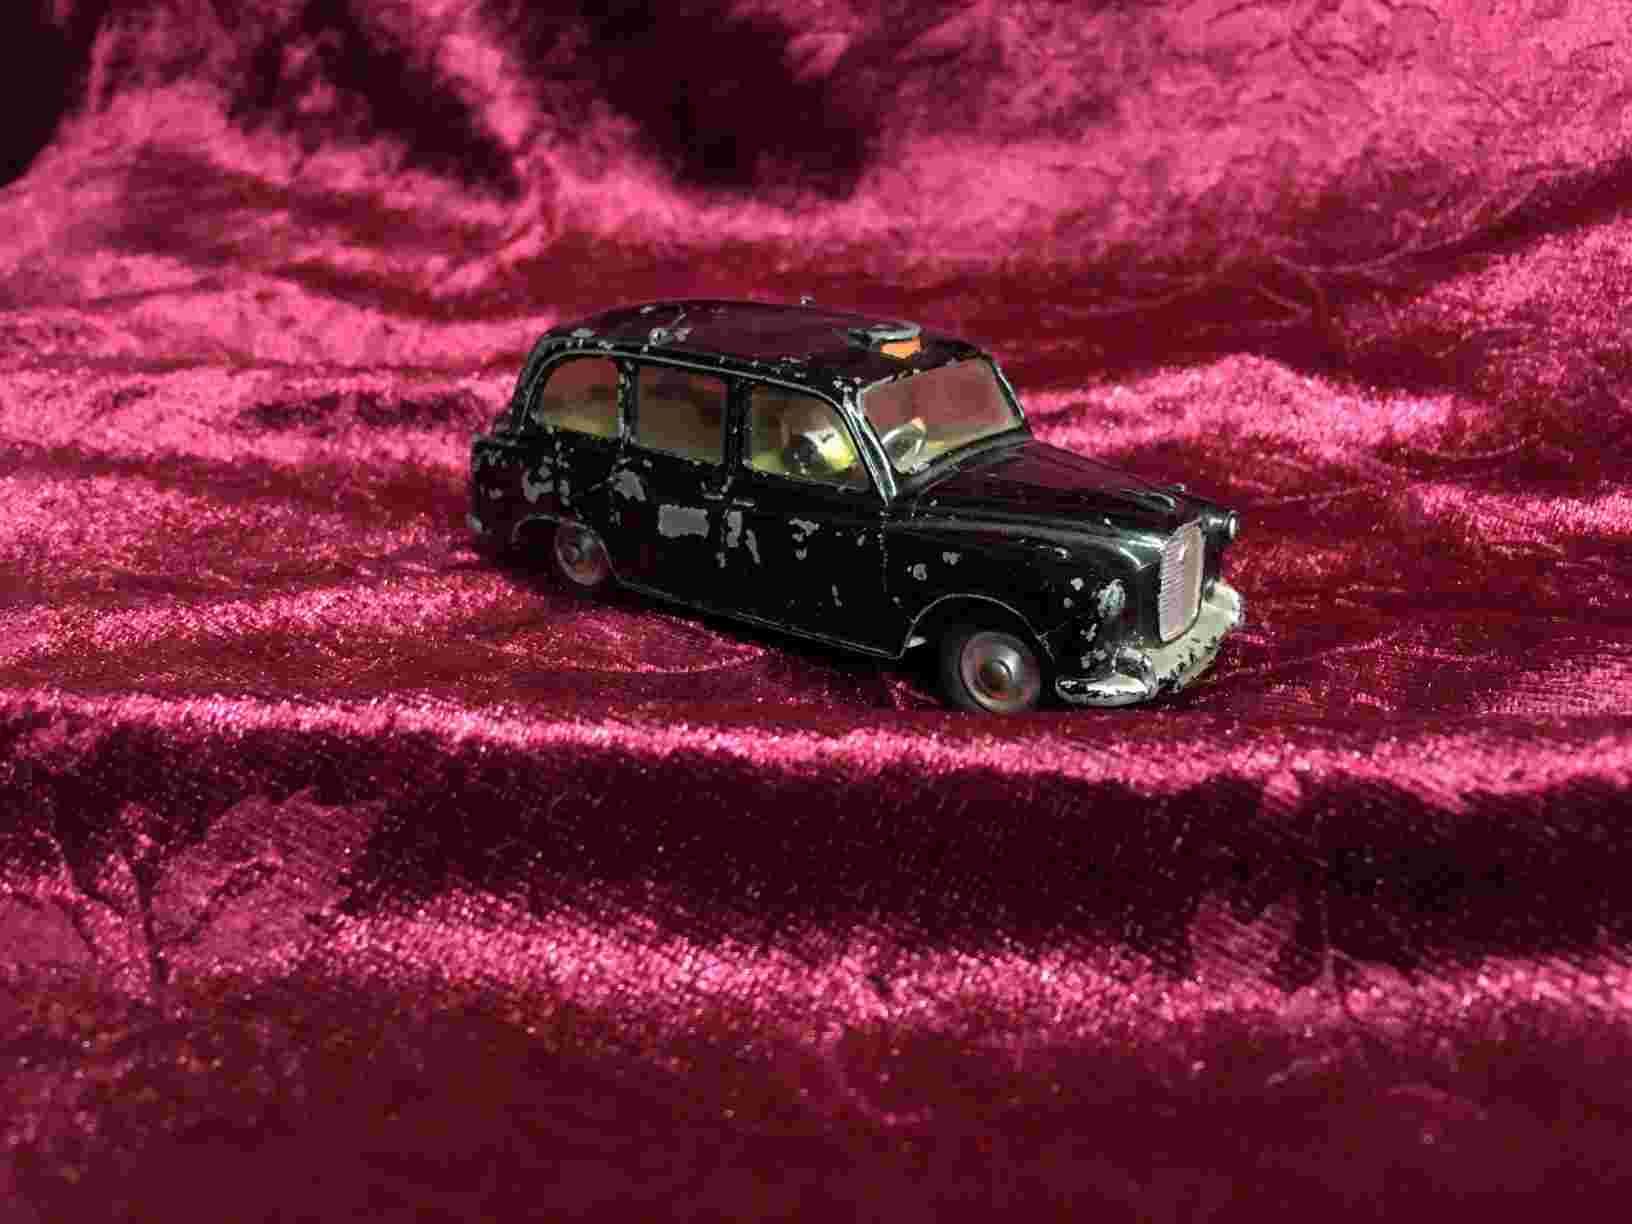 Legetøjsbil - London Cab, typisk sort London Taxi med de mange fine detaljer. Den er blevet leget med, så standen er god brugt. Pris: 160,- Kr.